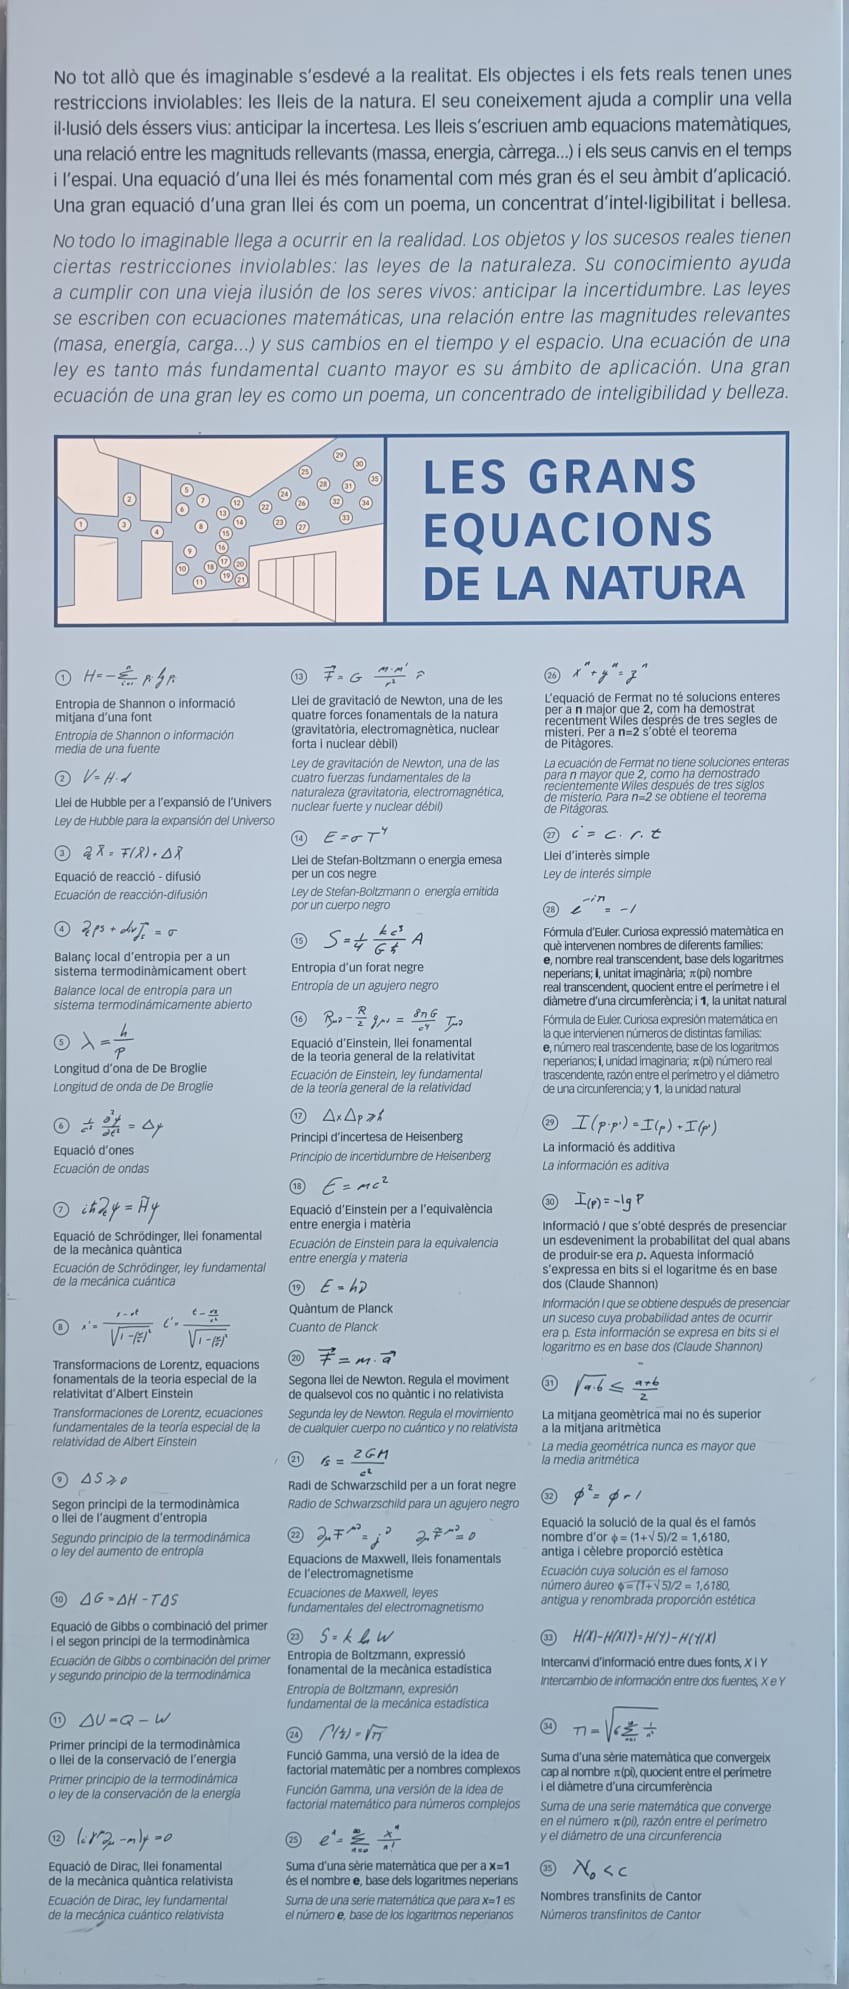 Equacions de la natura (Cosamocaixa)